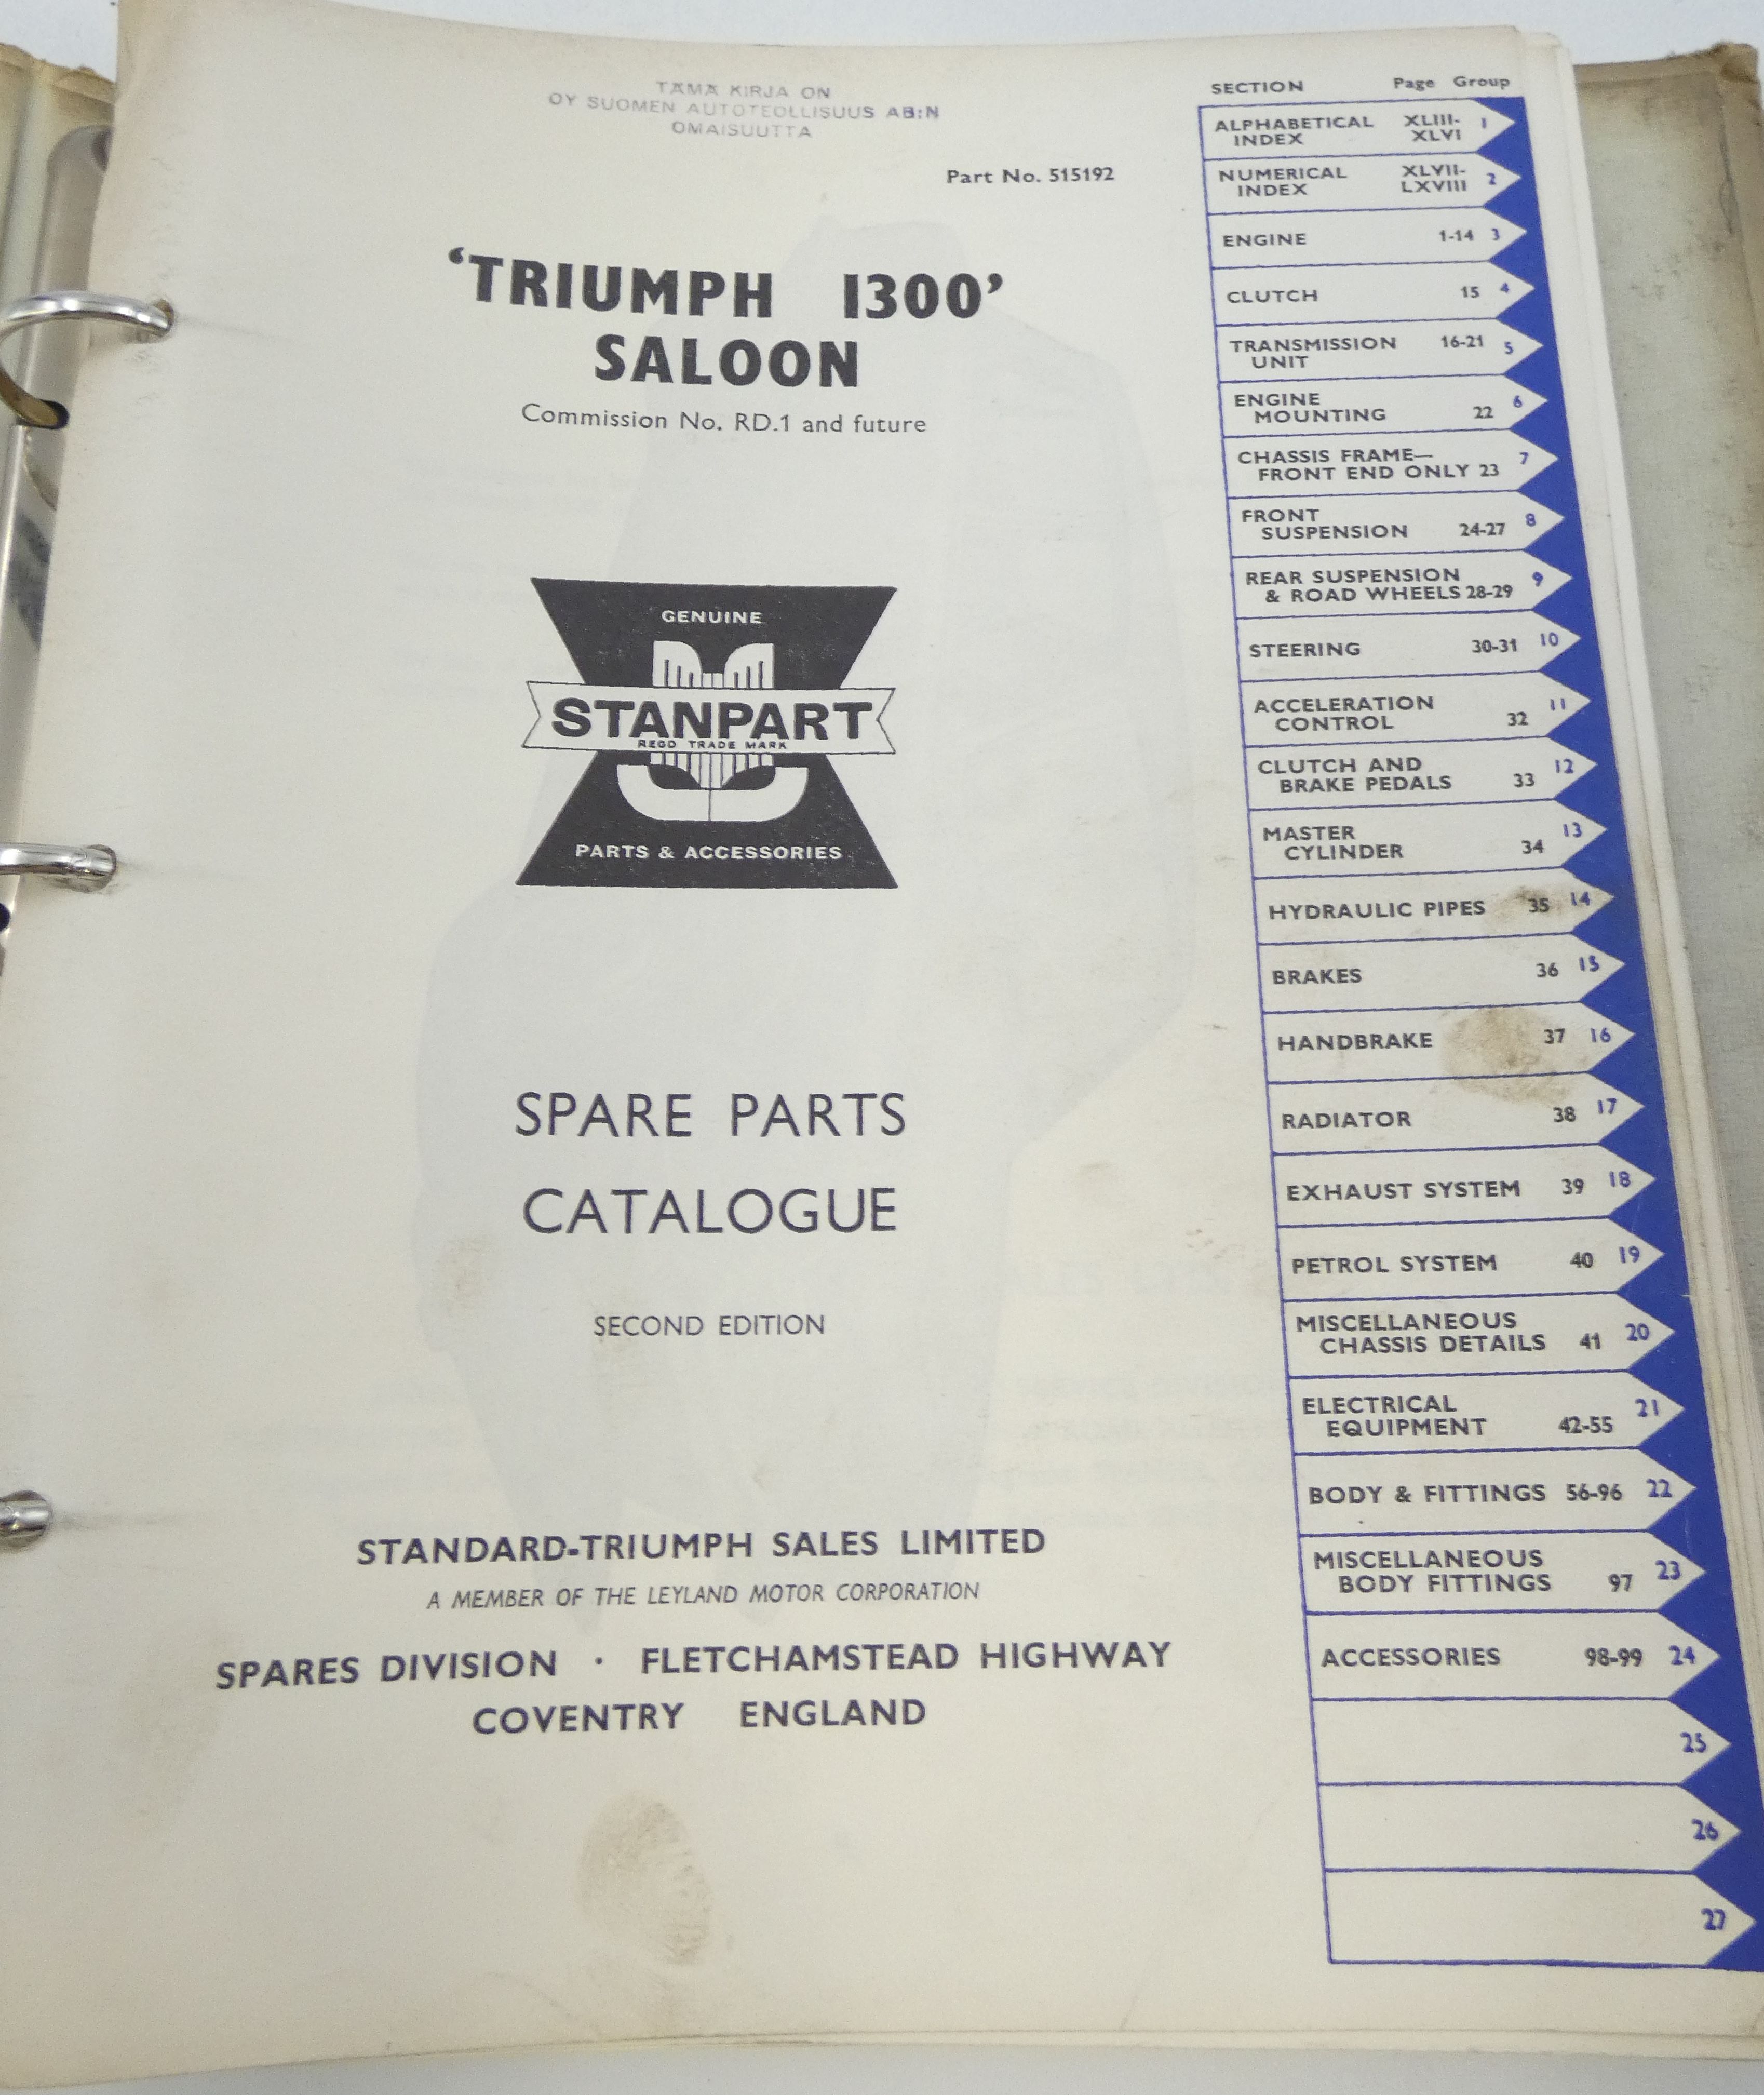 Triumph 1300 spare parts catalogue